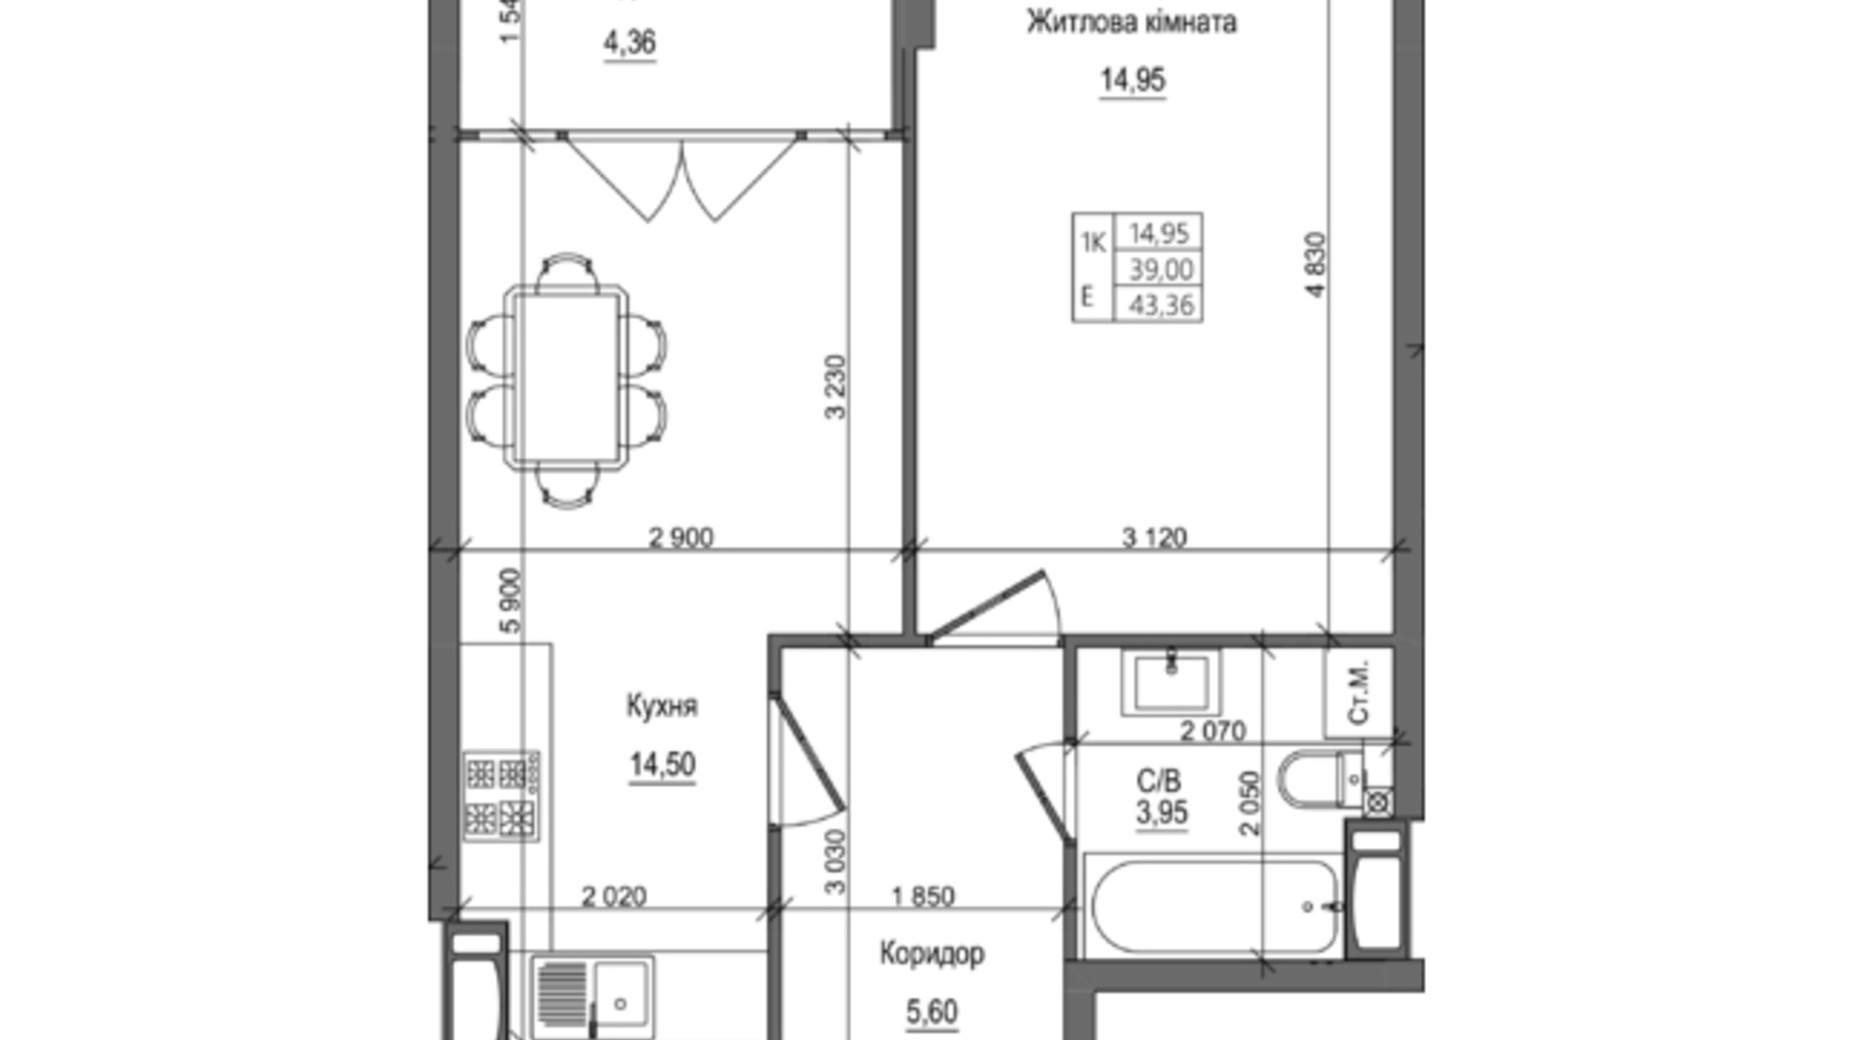 Планировка 1-комнатной квартиры в ЖК на Петлюры, 28 43.36 м², фото 365398